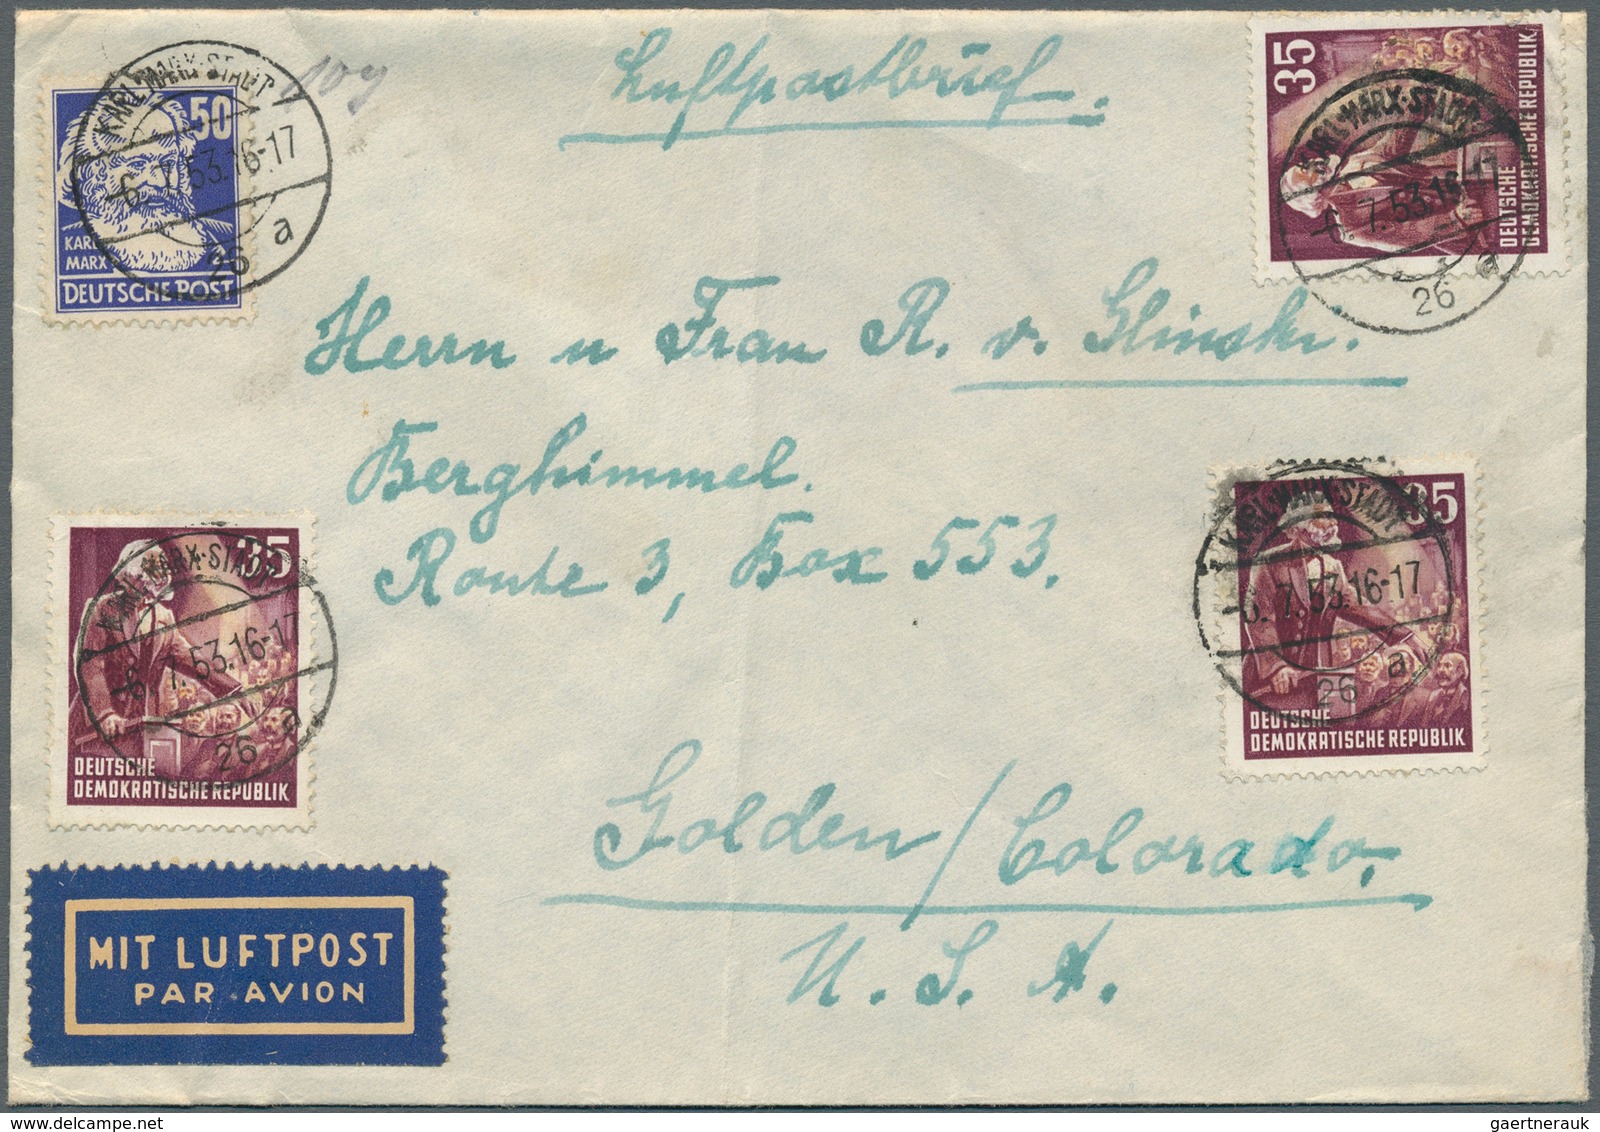 32319 DDR: 1949/1961, vielseitiger Posten von ca. 380 Briefen und Karten aus alter Familien-Korrespondenz,